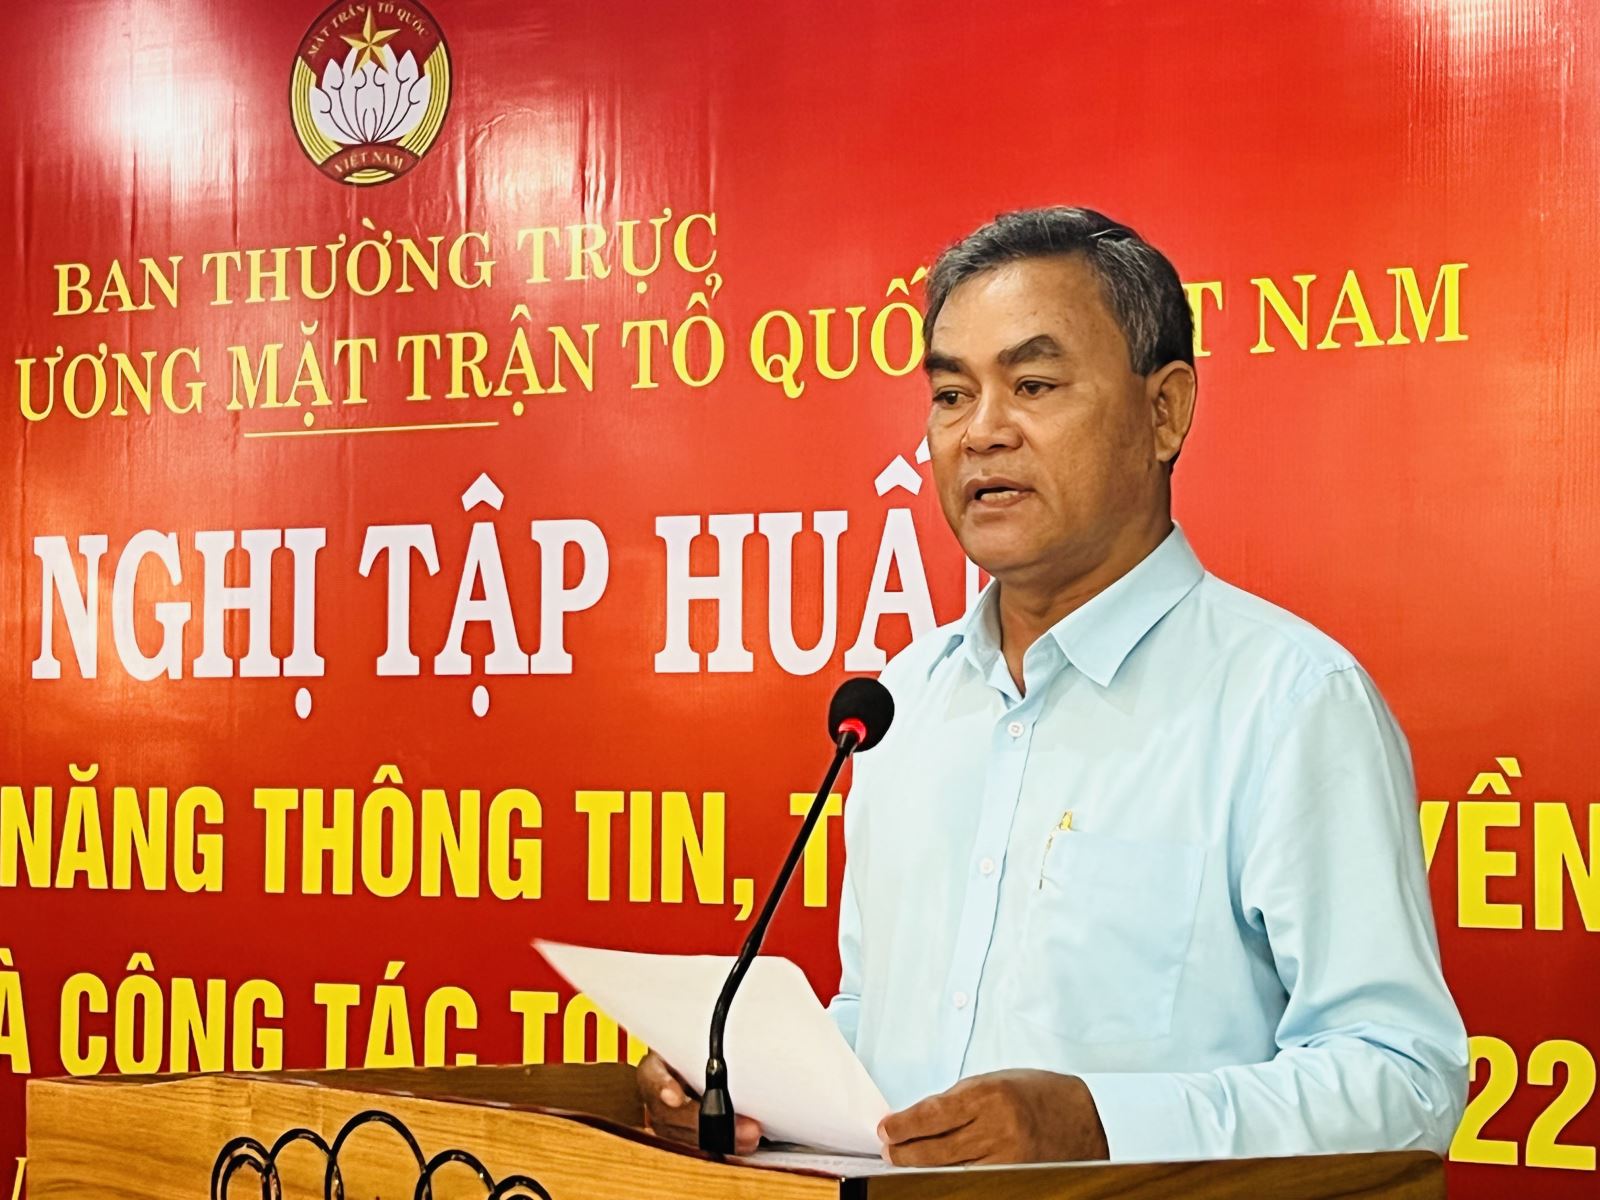 Ông Y Biêr Niê, Phó Bí thư Tỉnh ủy Đắk Lắk phát biểu về công tác tôn giáo tại Đắk Lắk.